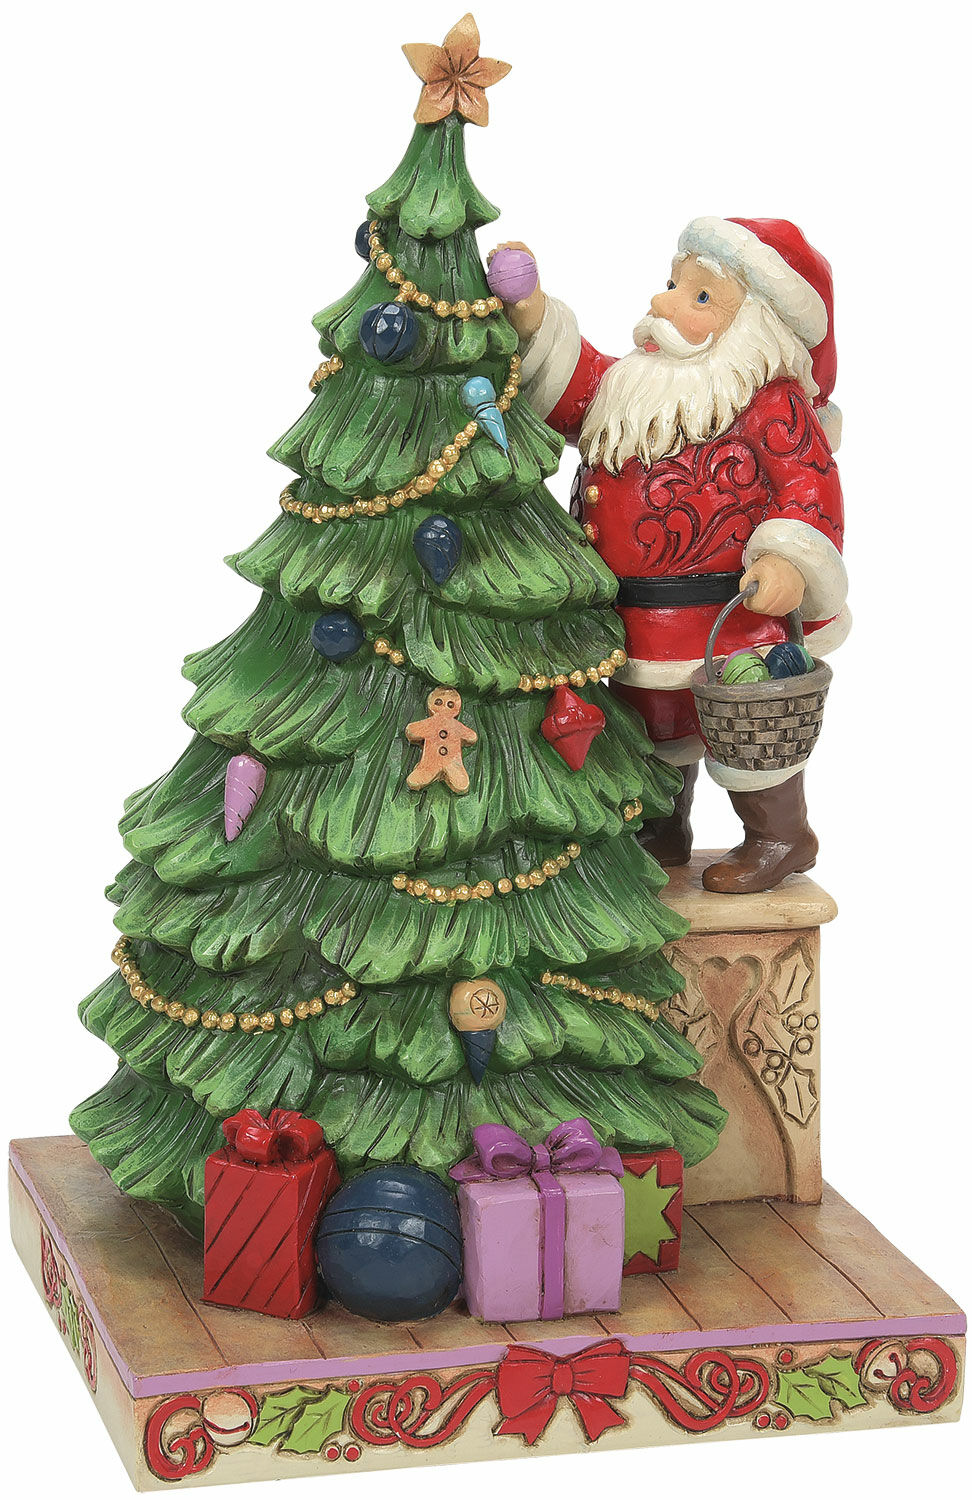 Skulptur "Julemand med juletræ", støbt von Jim Shore